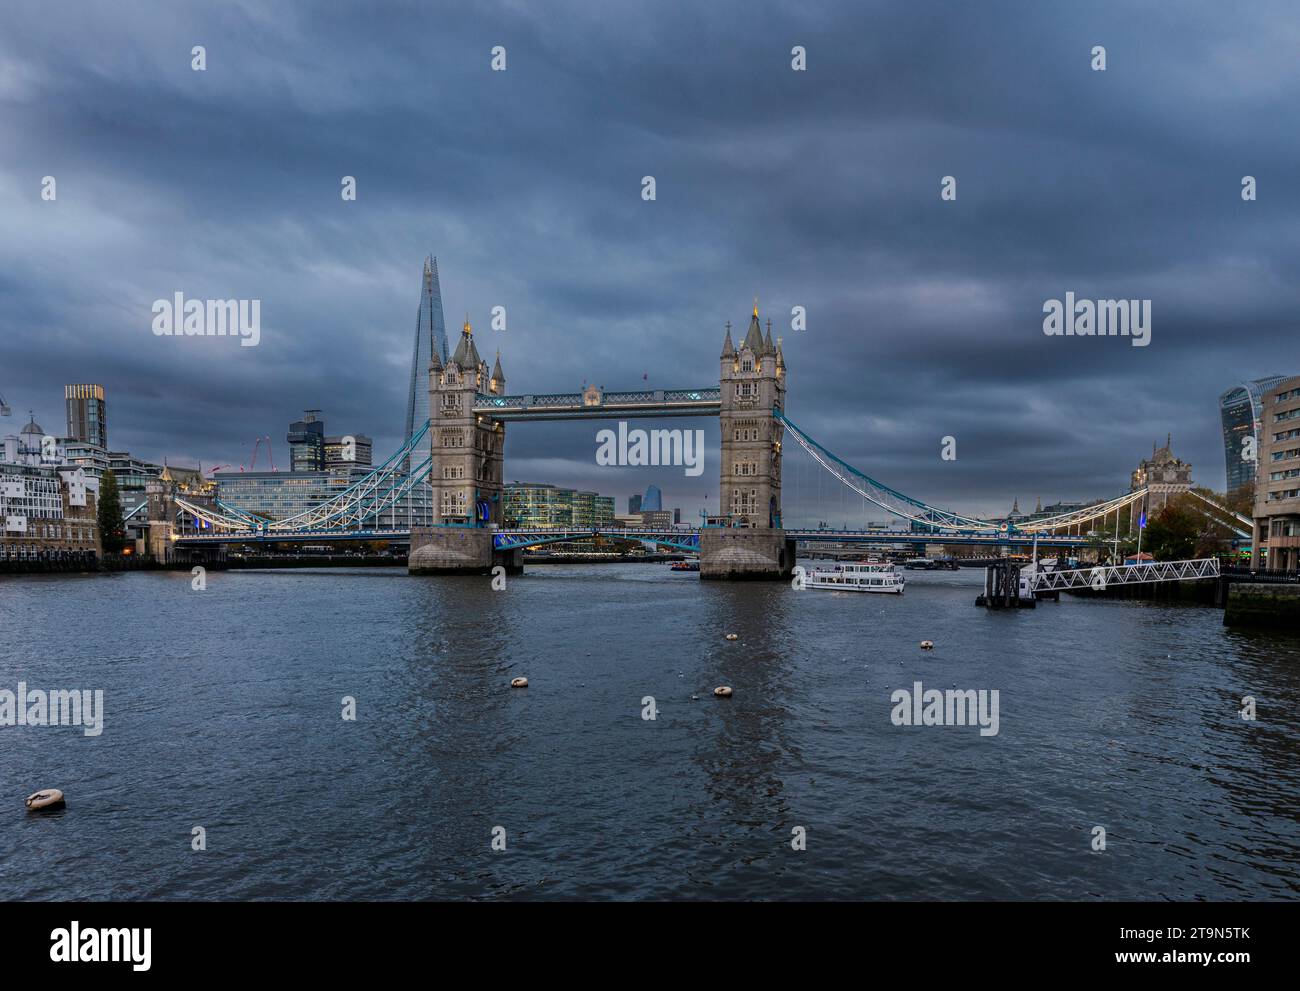 Fin d'après-midi en novembre Tower Bridge, chef-d'œuvre victorien traversant la Tamise, Londres, Angleterre, Royaume-Uni Banque D'Images